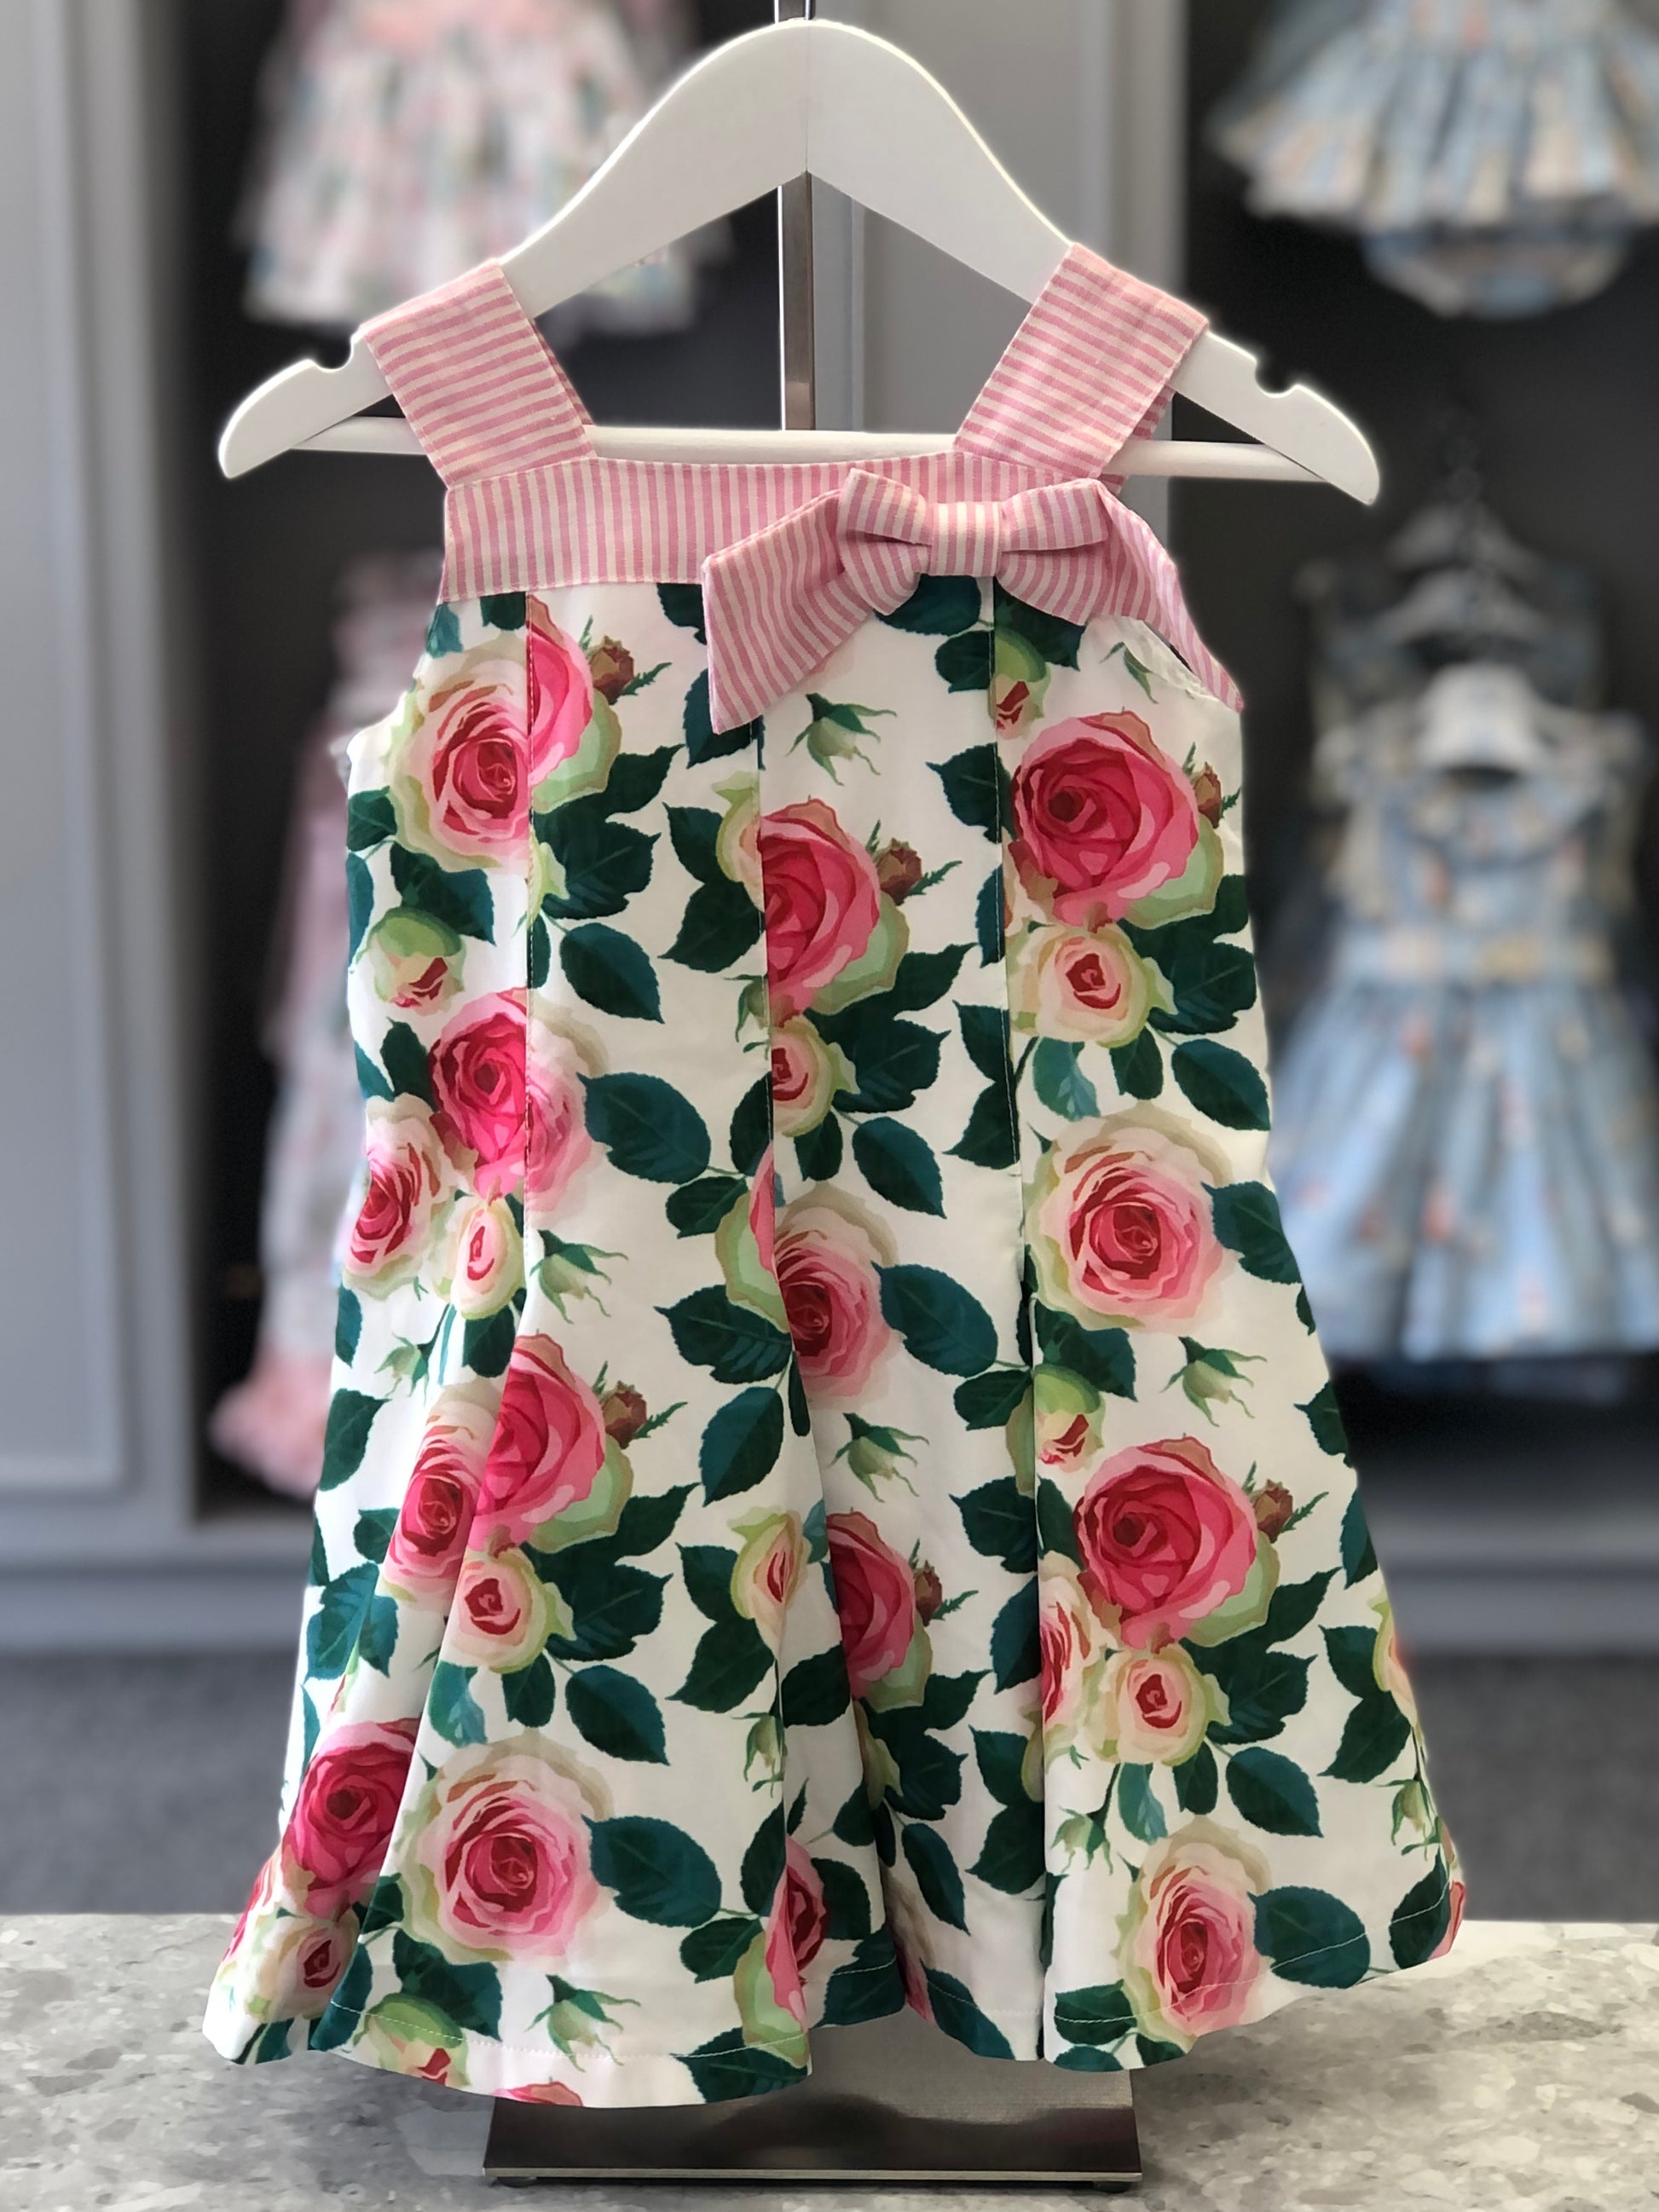 PAN CON CHOCOLATE Pink & Green Rose Print Girls Dress